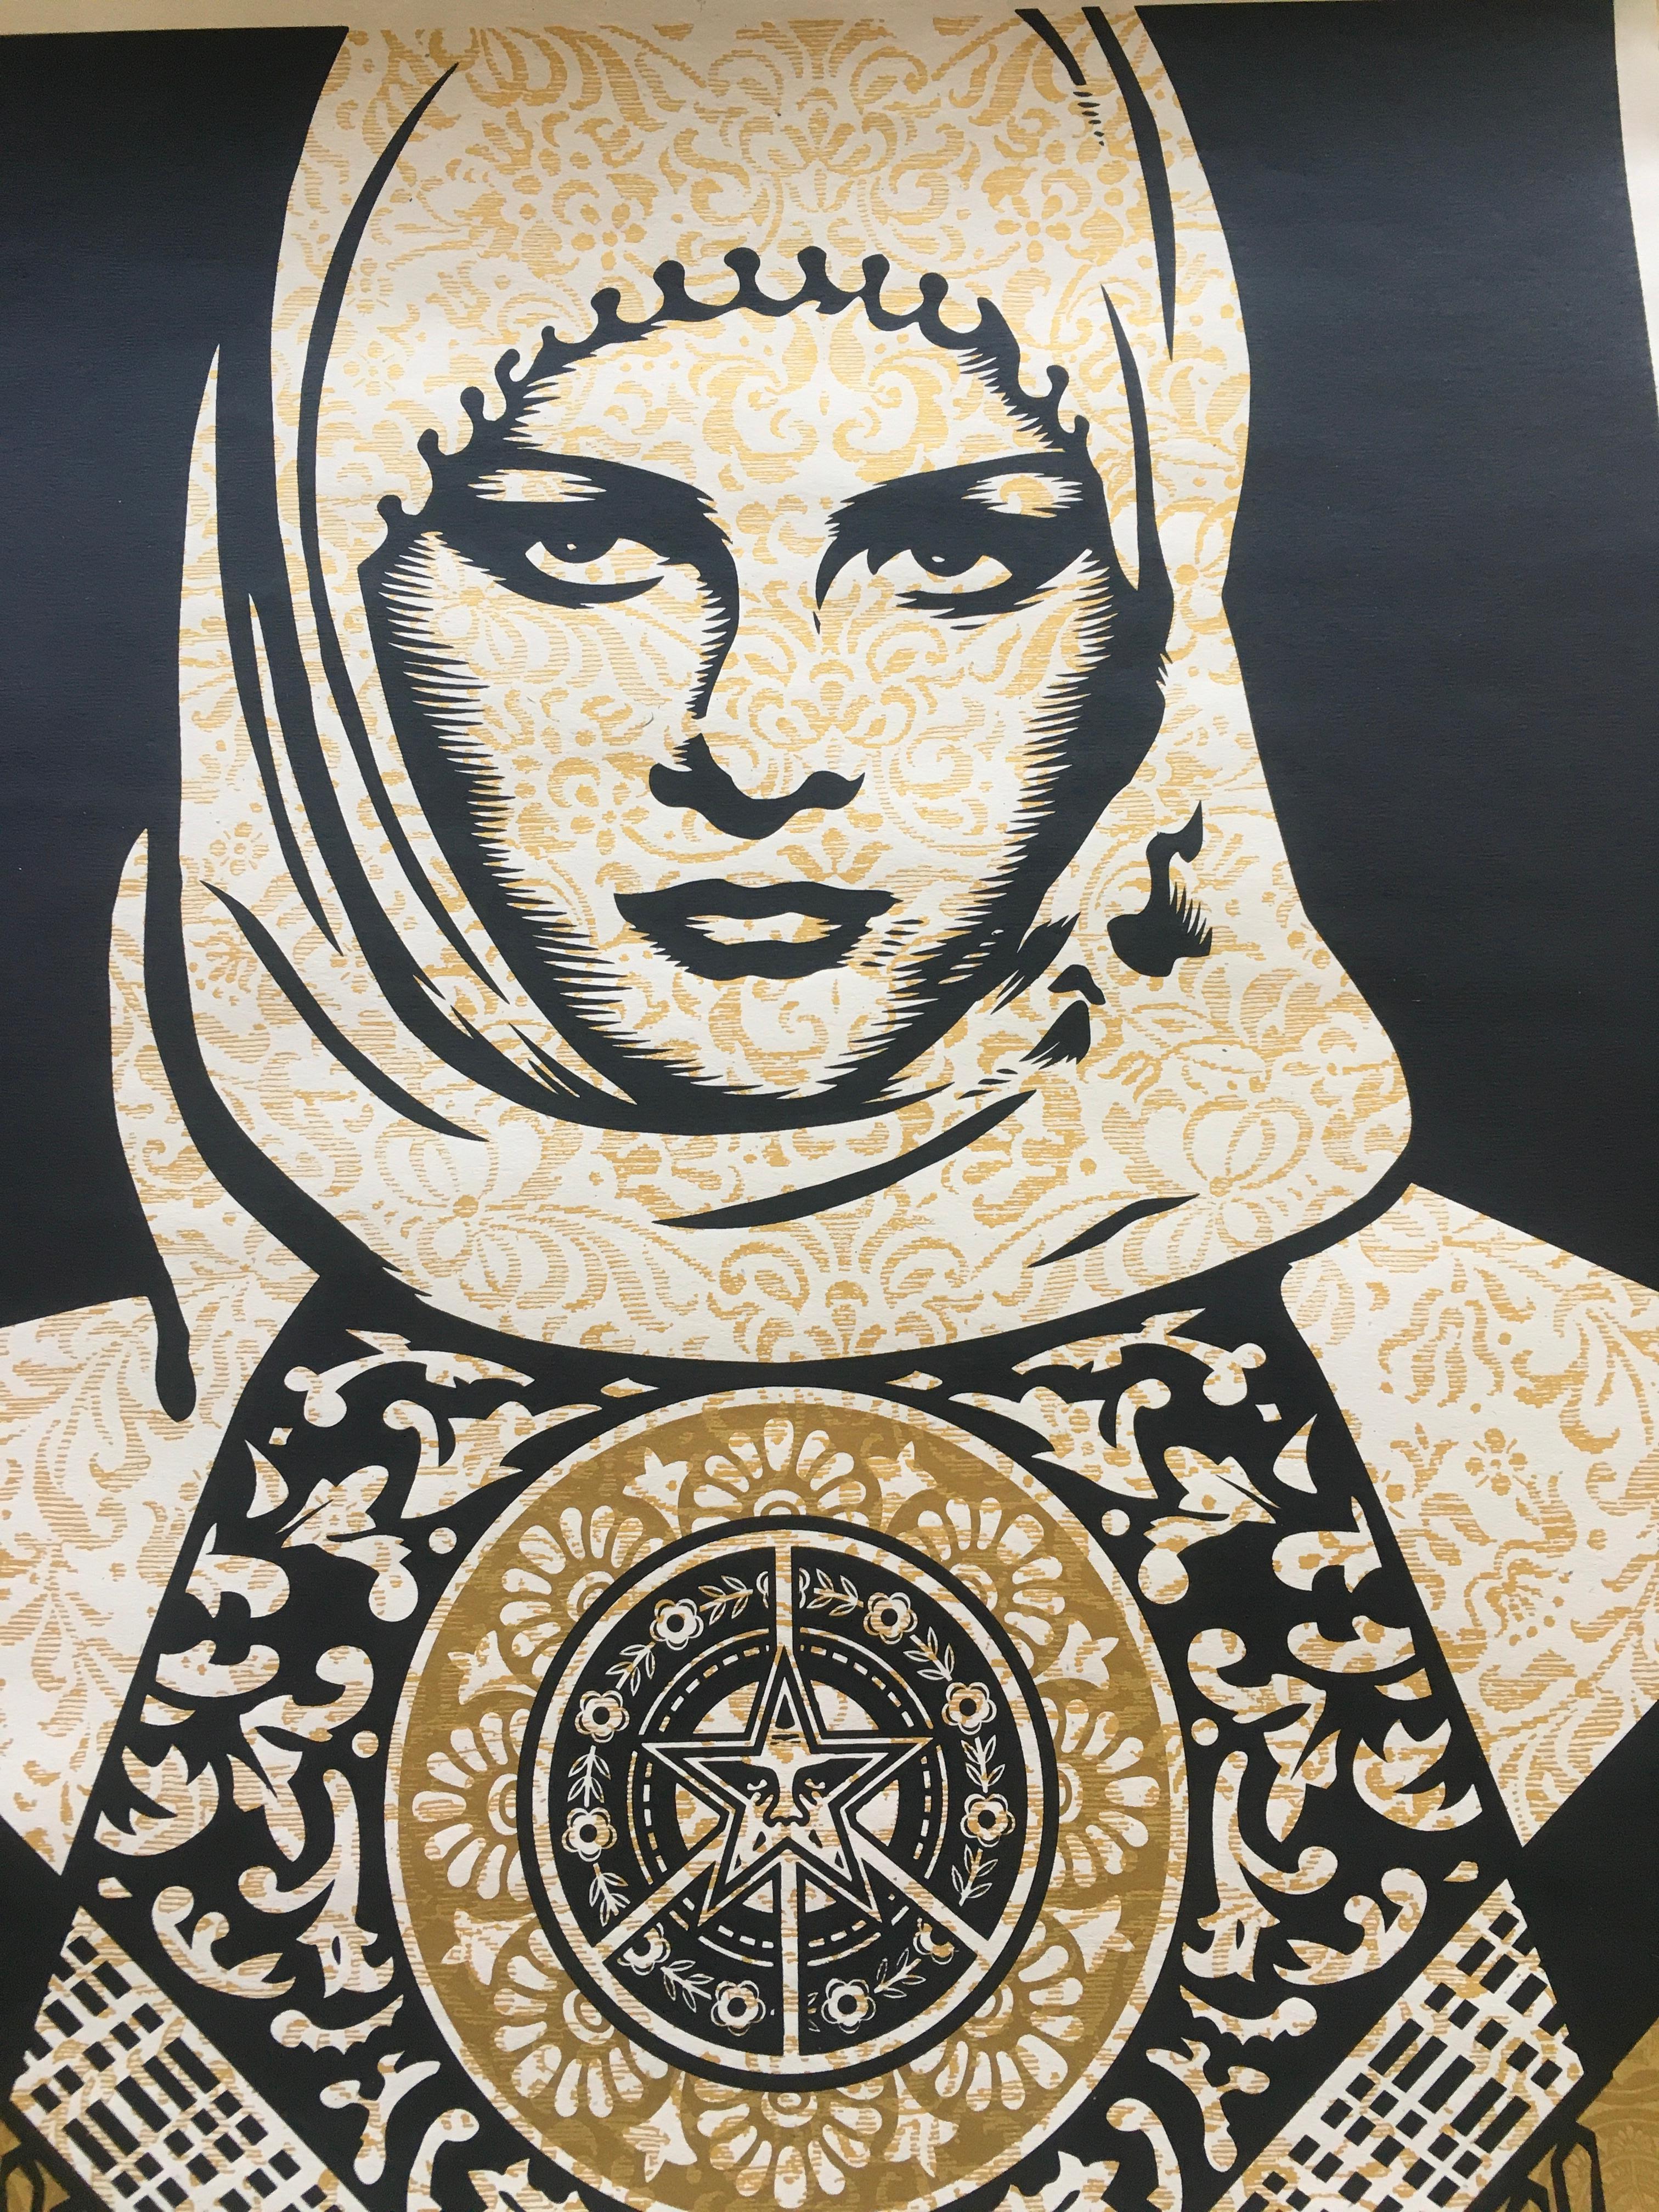 Arab Woman Gold (2007), sérigraphie, édition limitée de 300 exemplaires - Print de Shepard Fairey